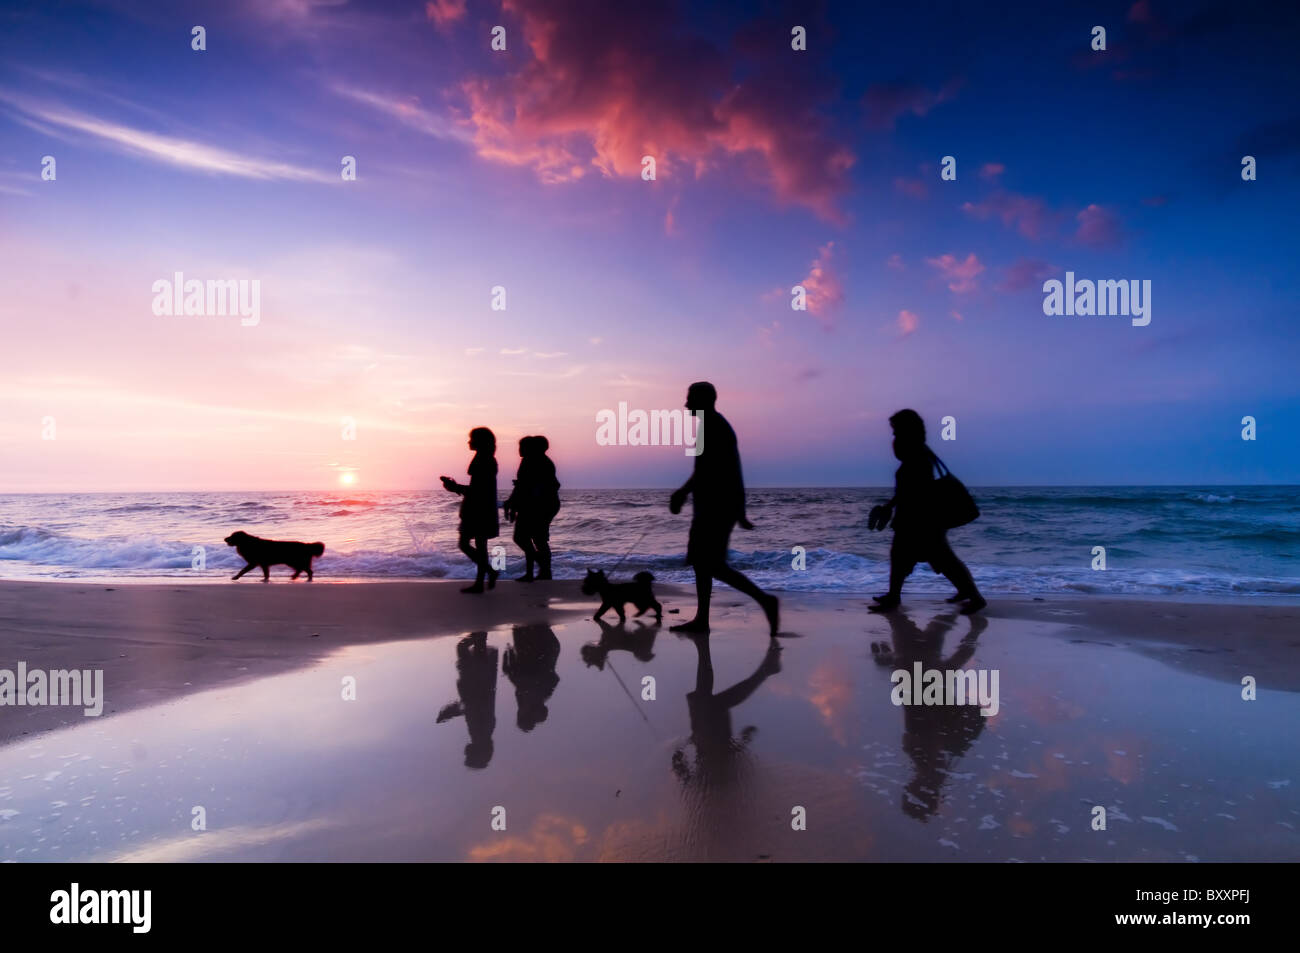 Familienwanderung am Strand bei Sonnenuntergang - Cgi Menschen Stockfoto